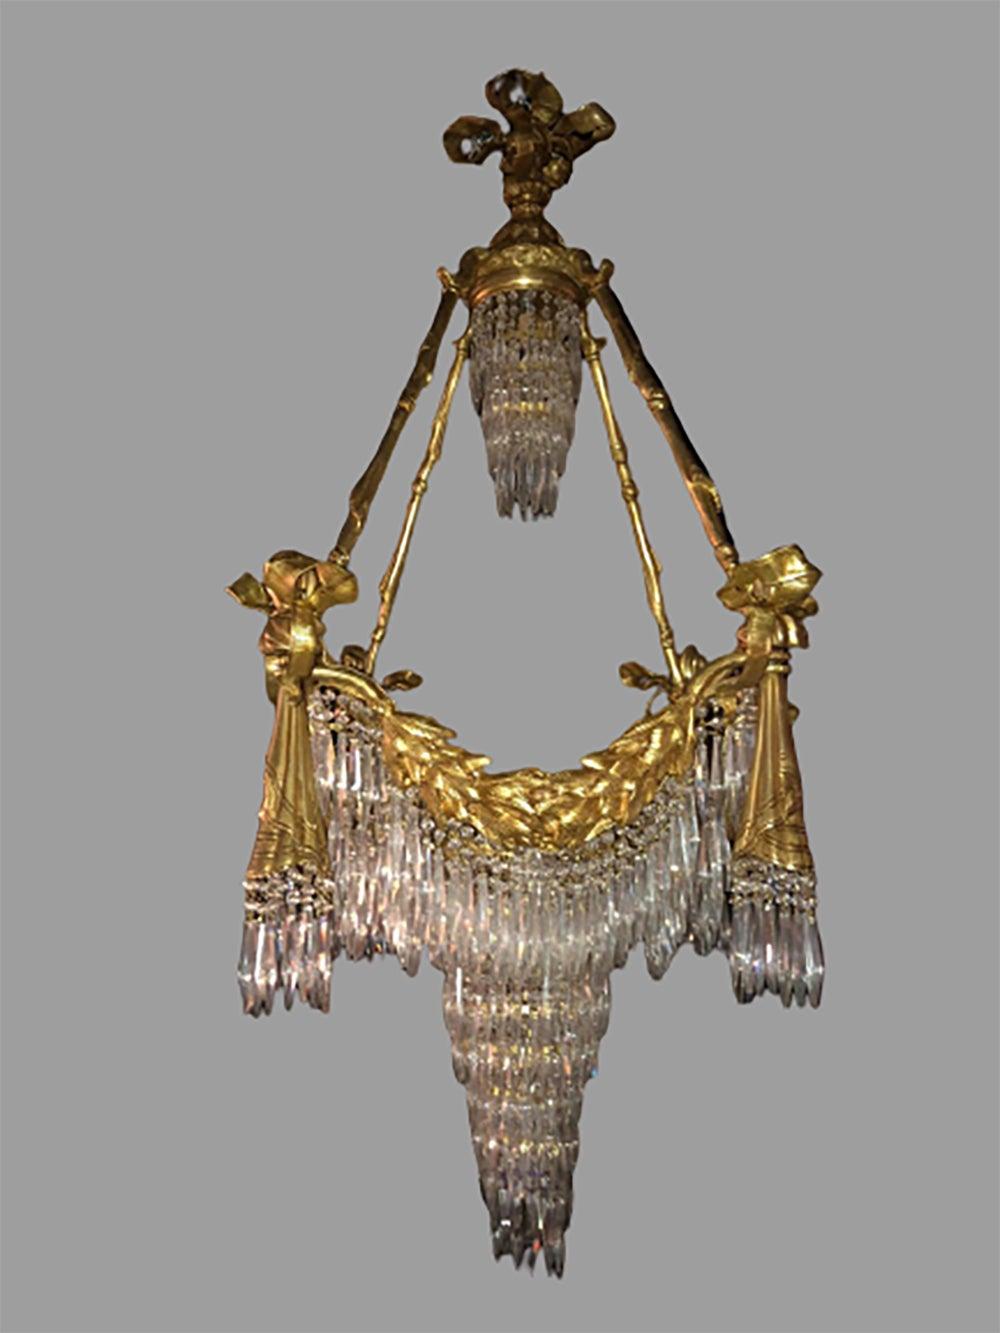 Lustre de draperie de style Louis XVI en bronze avec rubans et glands en cristal et 18 lumières. Câblage récemment effectué. Ce lustre de qualité est tout simplement stupéfiant et est certain d'illuminer n'importe quelle pièce de la maison. Le